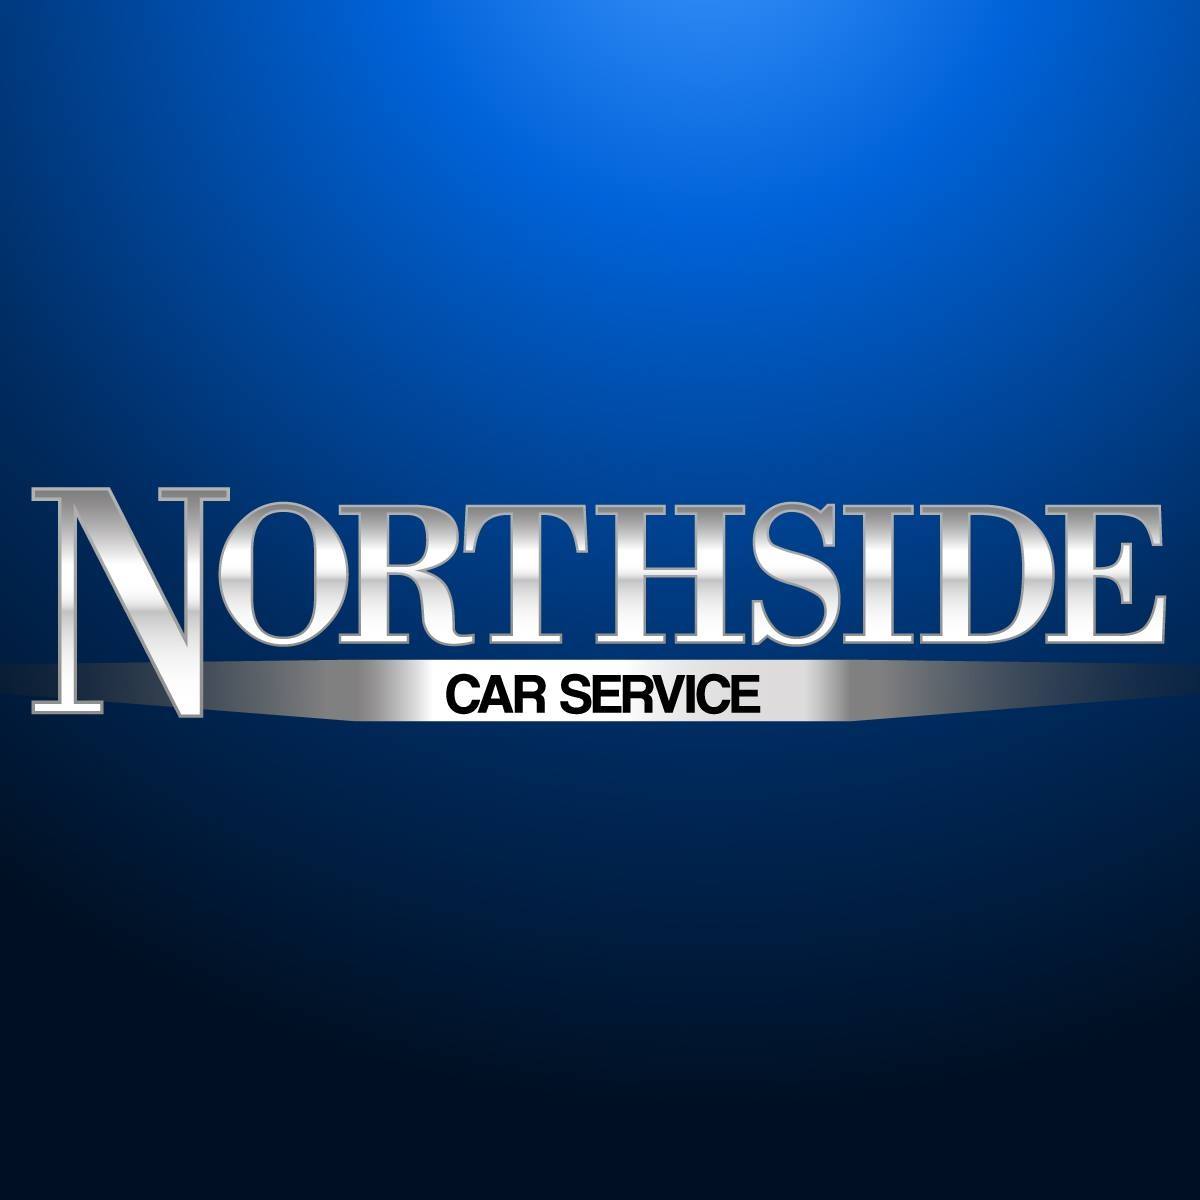 Business logo of Northside Car Service